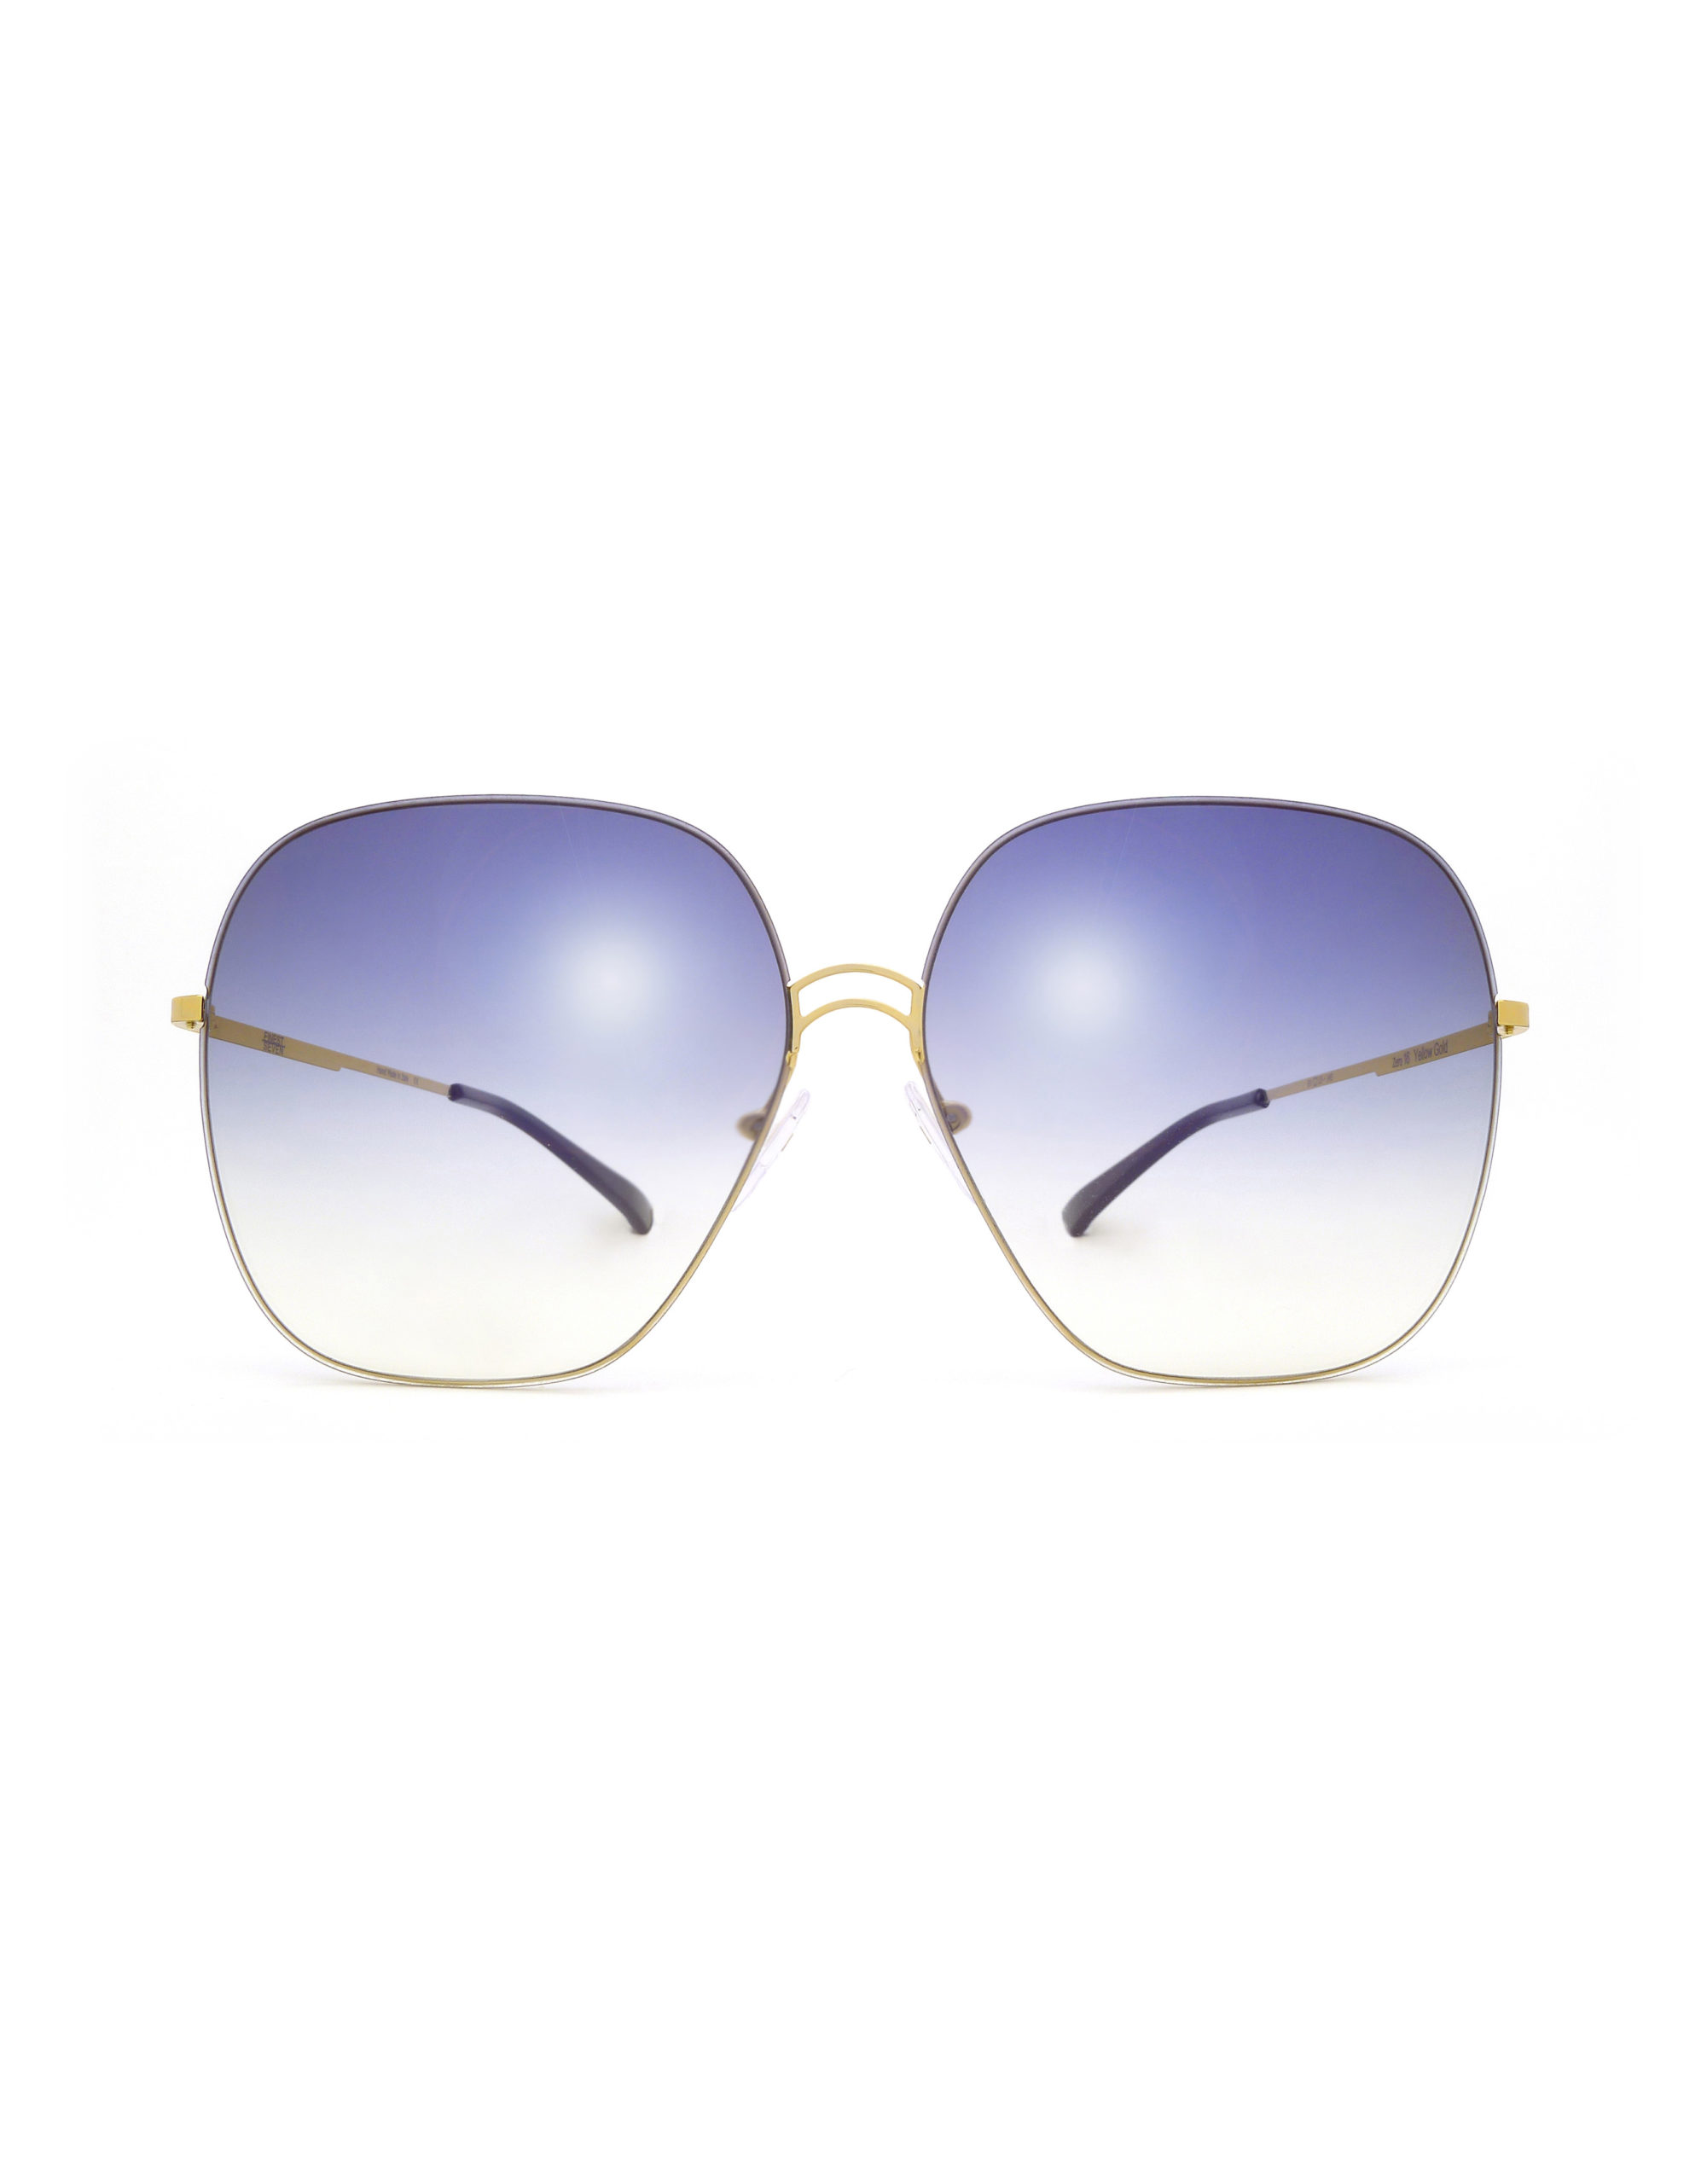 ZERO 16 Grad Violet Flash - Luxury Sunglasses, Designer Sunglasses ...